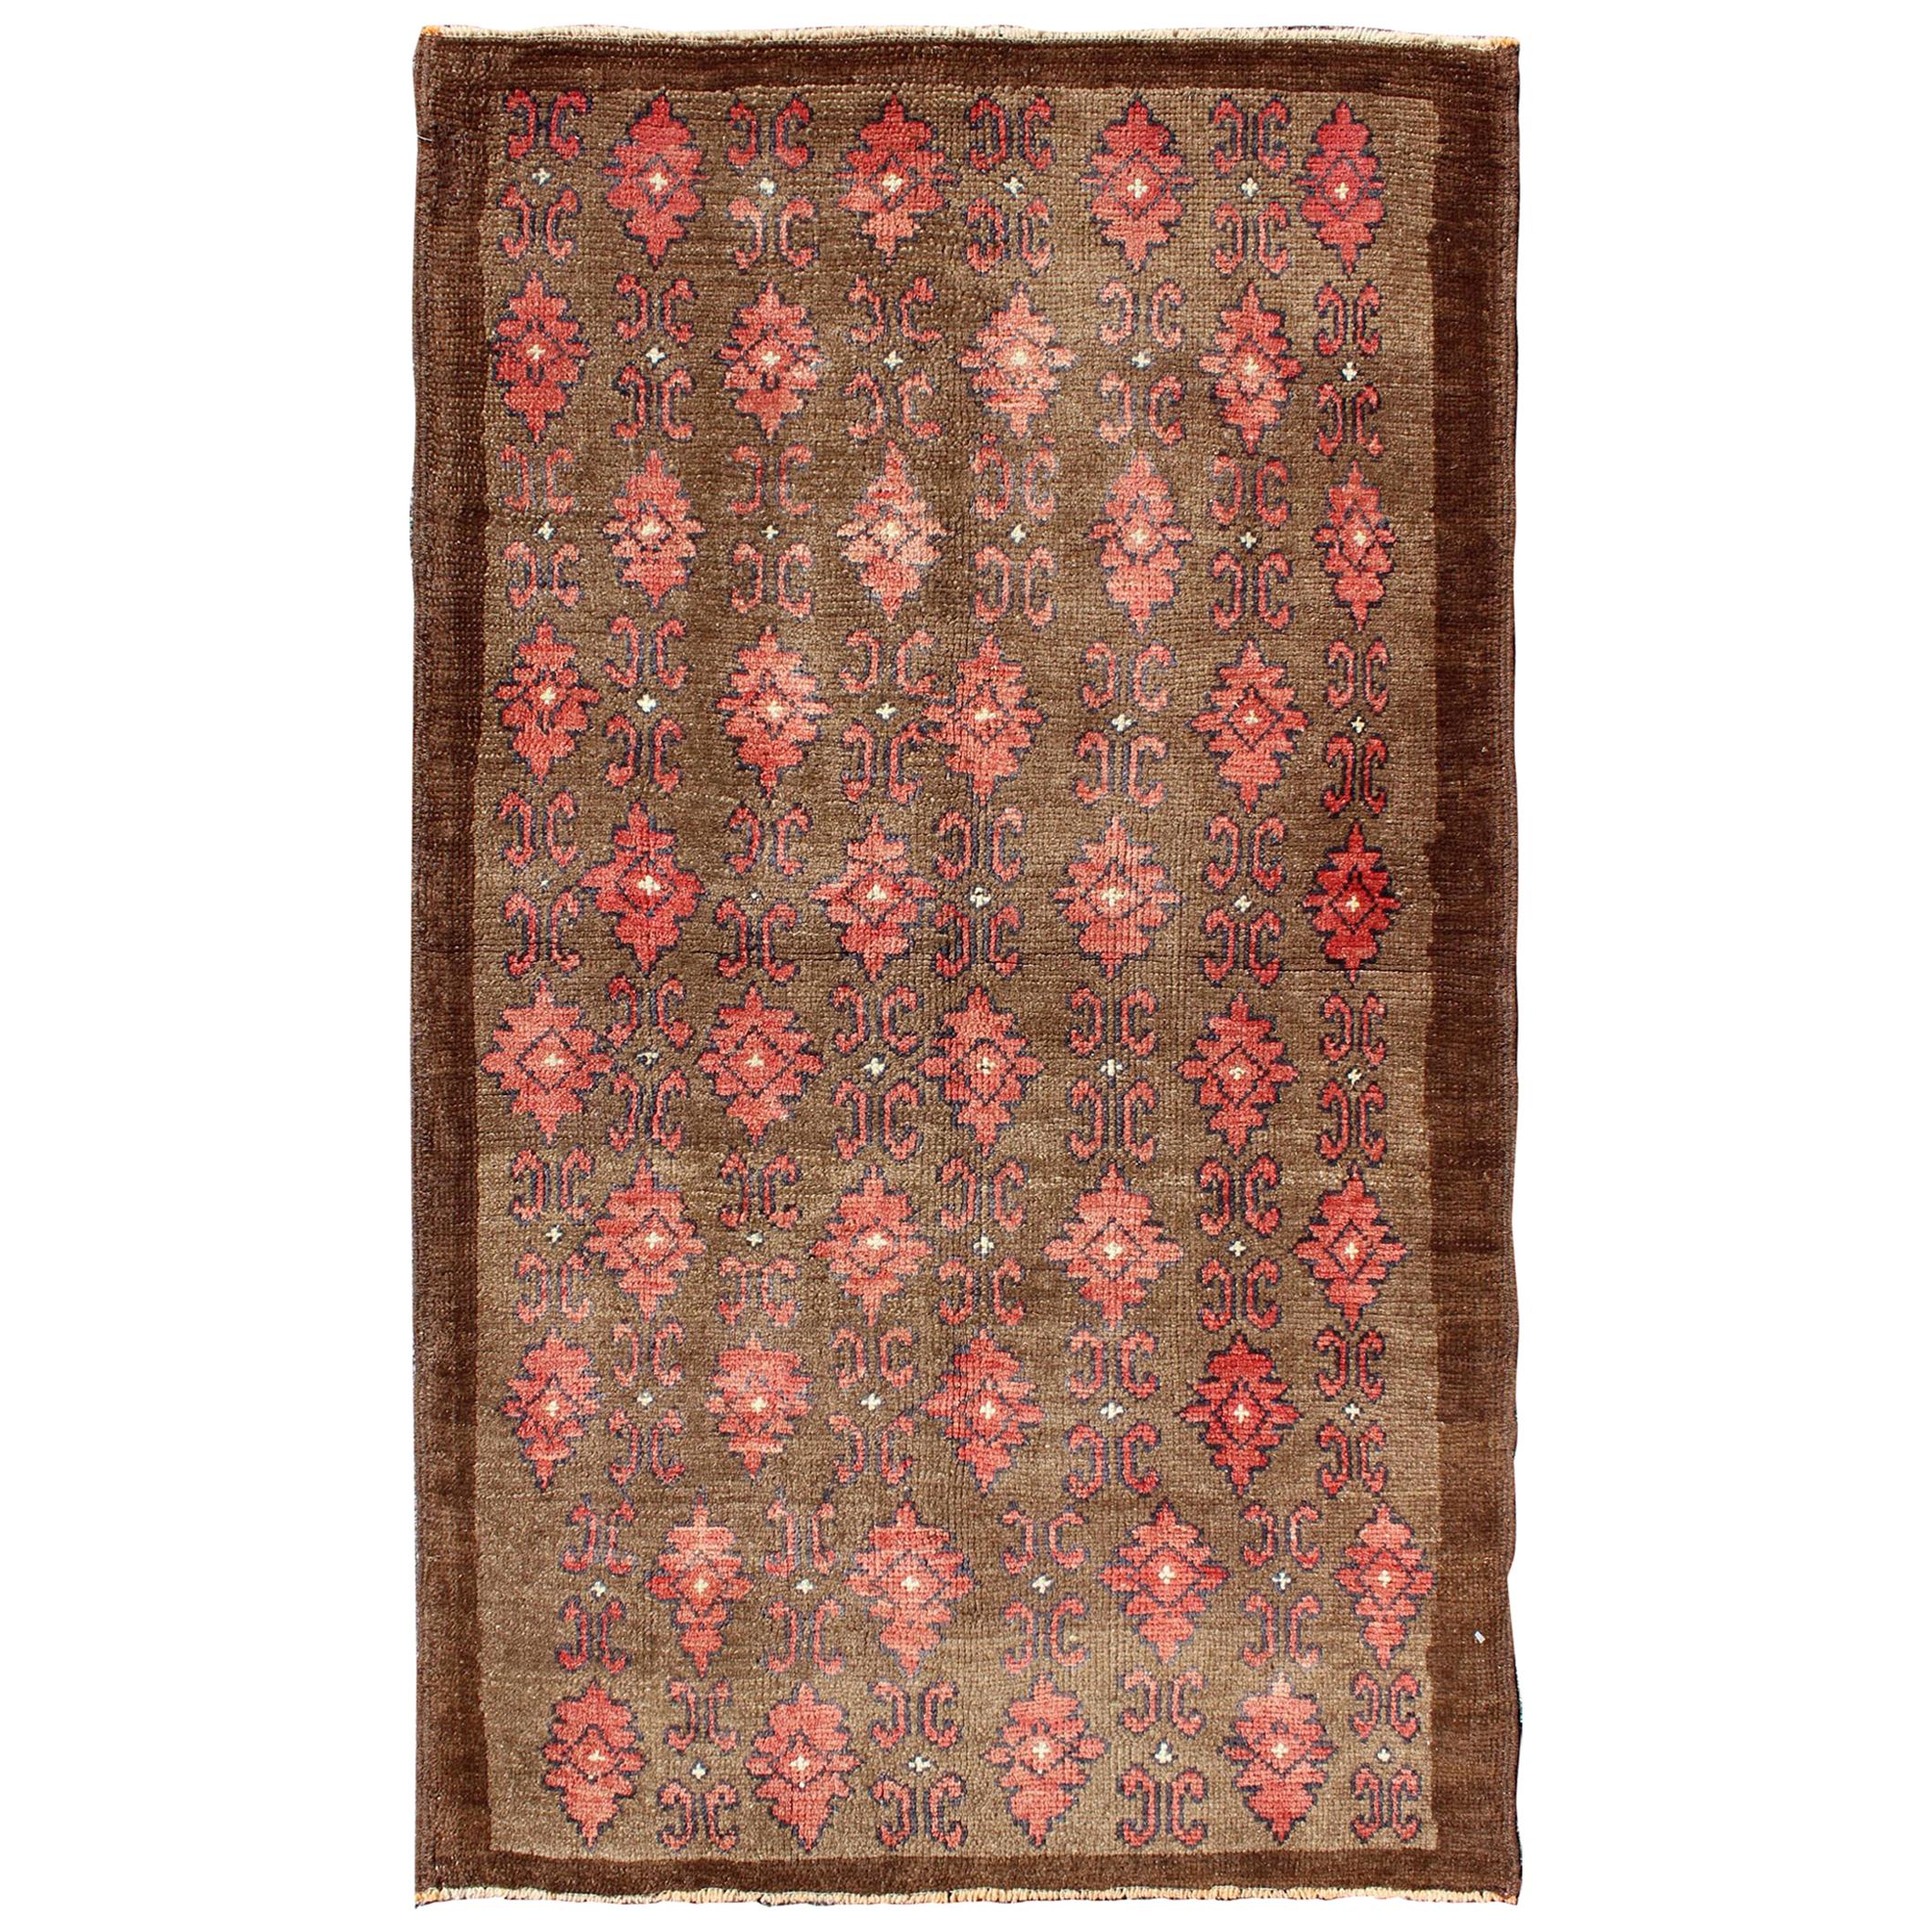 Roter und brauner türkischer Oushak-Teppich im Vintage-Stil mit wiederkehrendem vertikalen Motiv